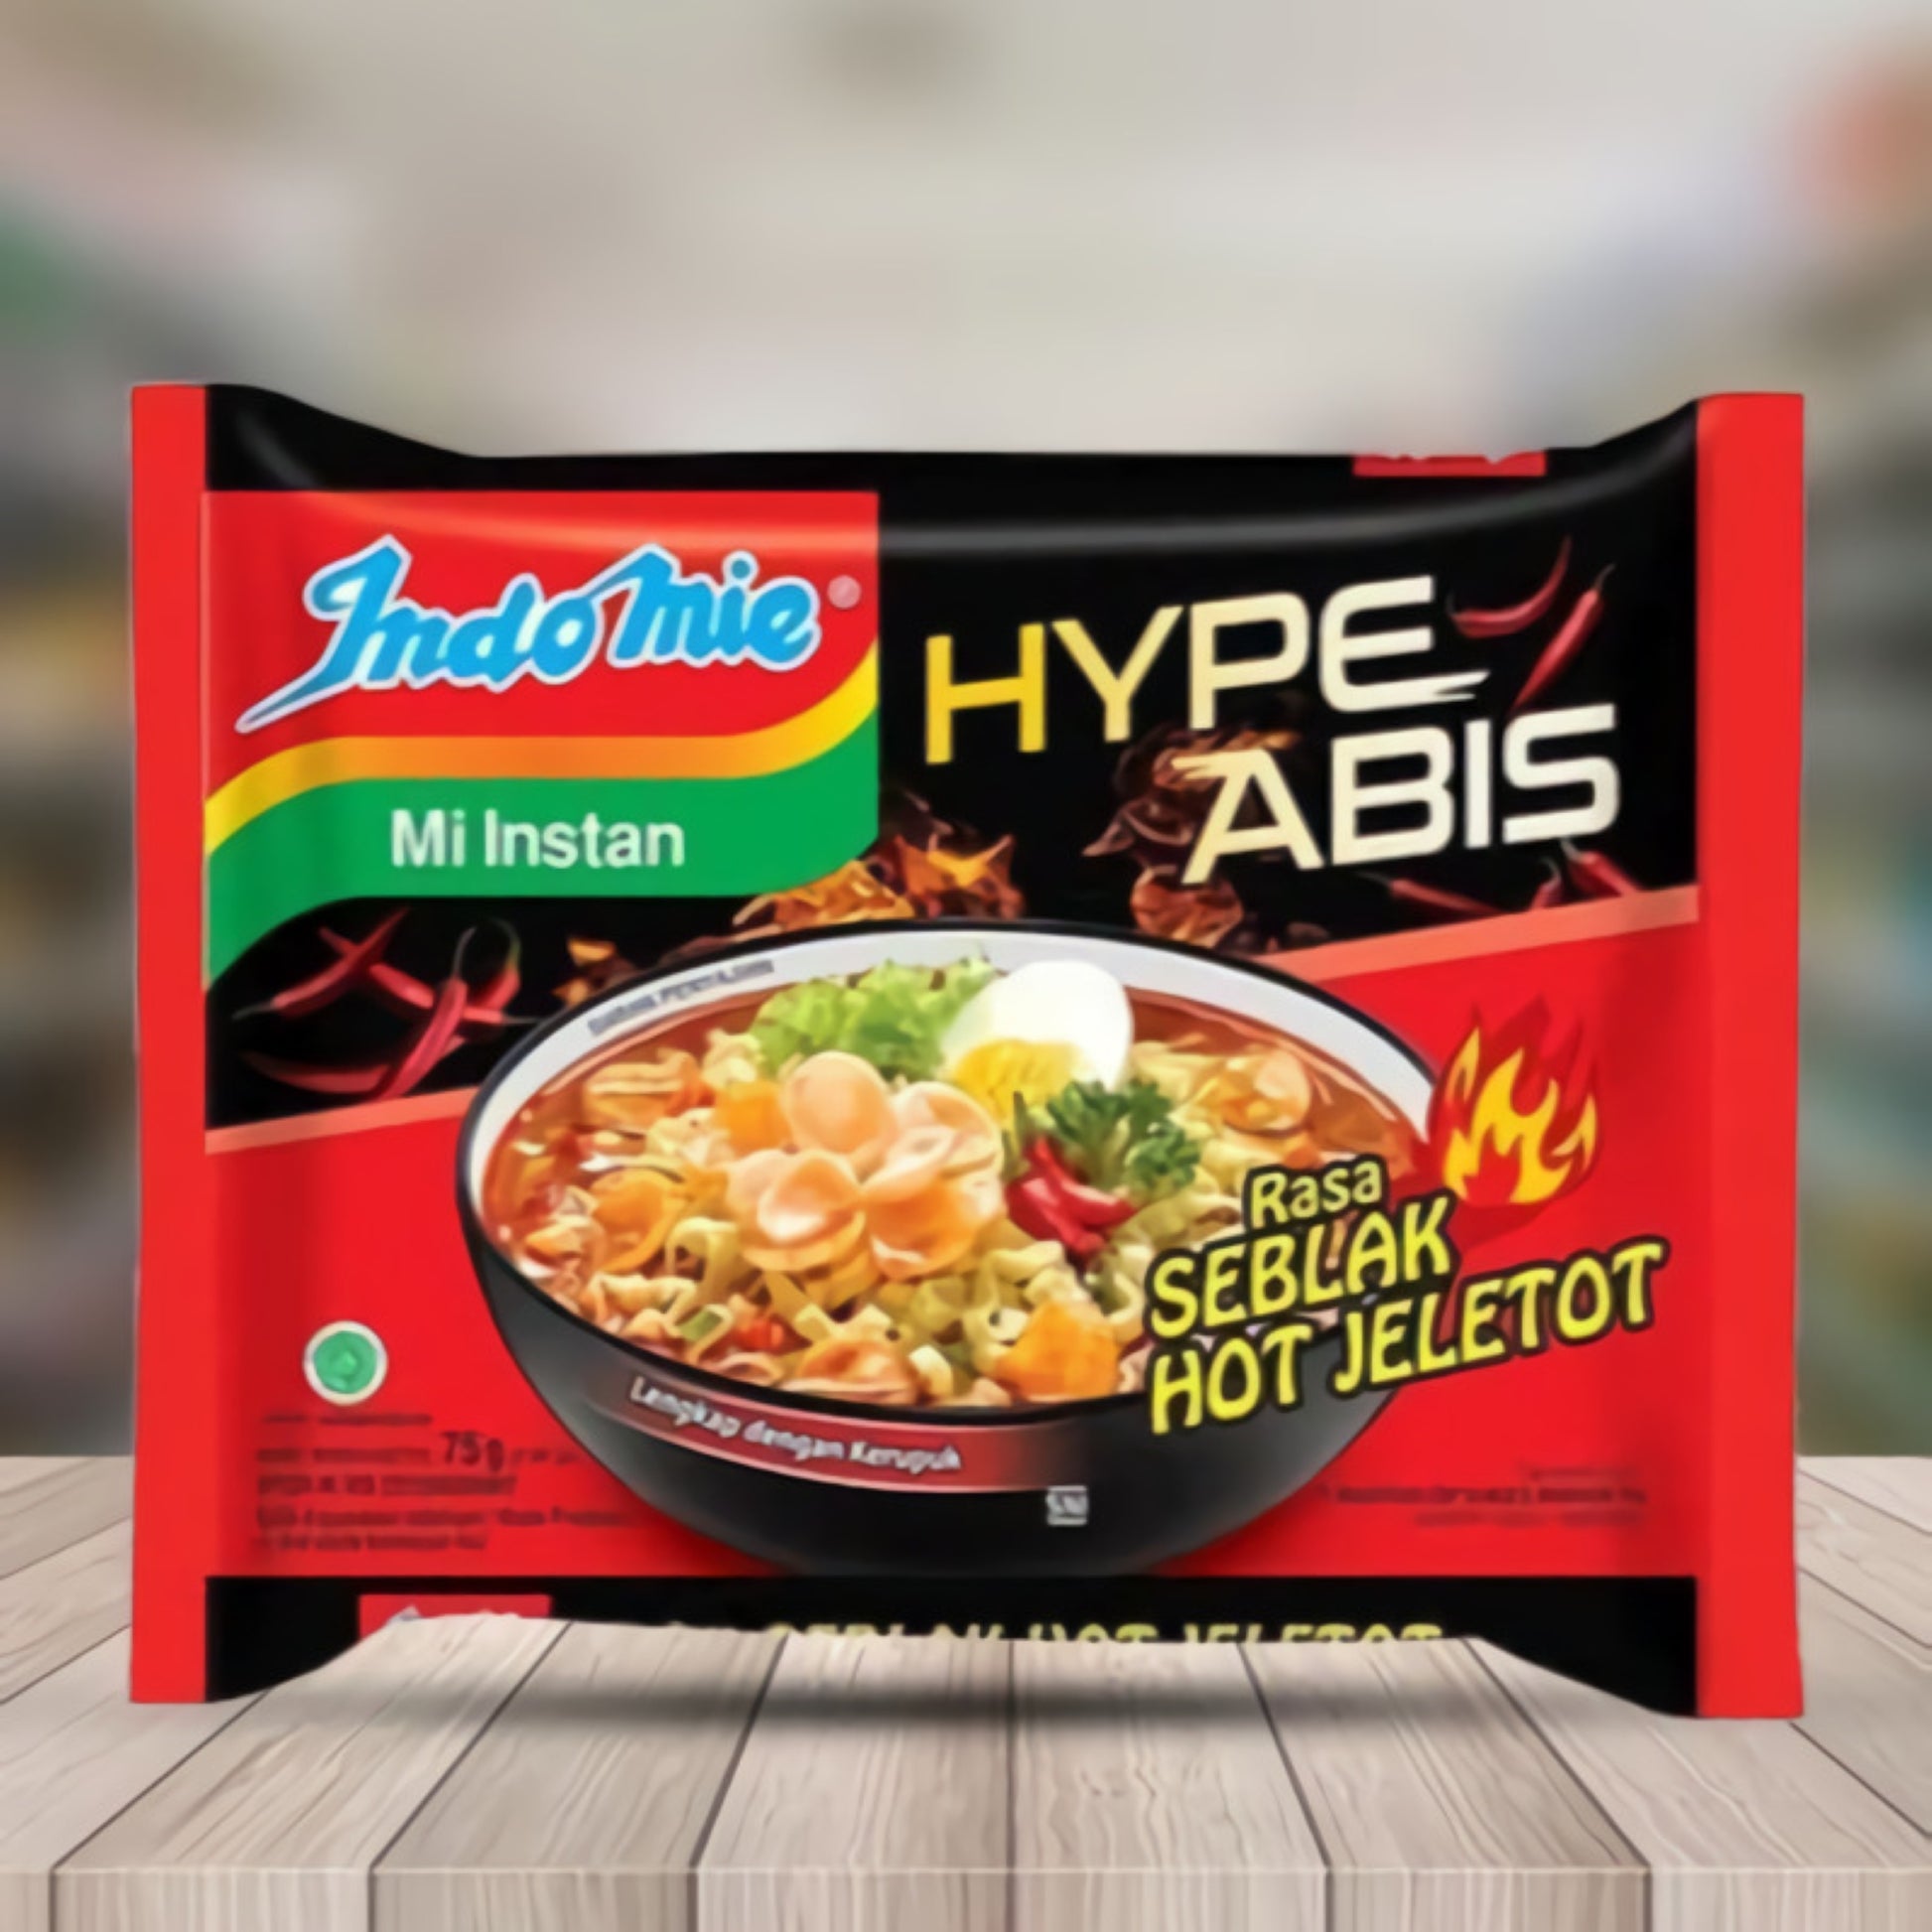 Indomie Hype Abis Taste of Seblak Hot Jeletot For Sale